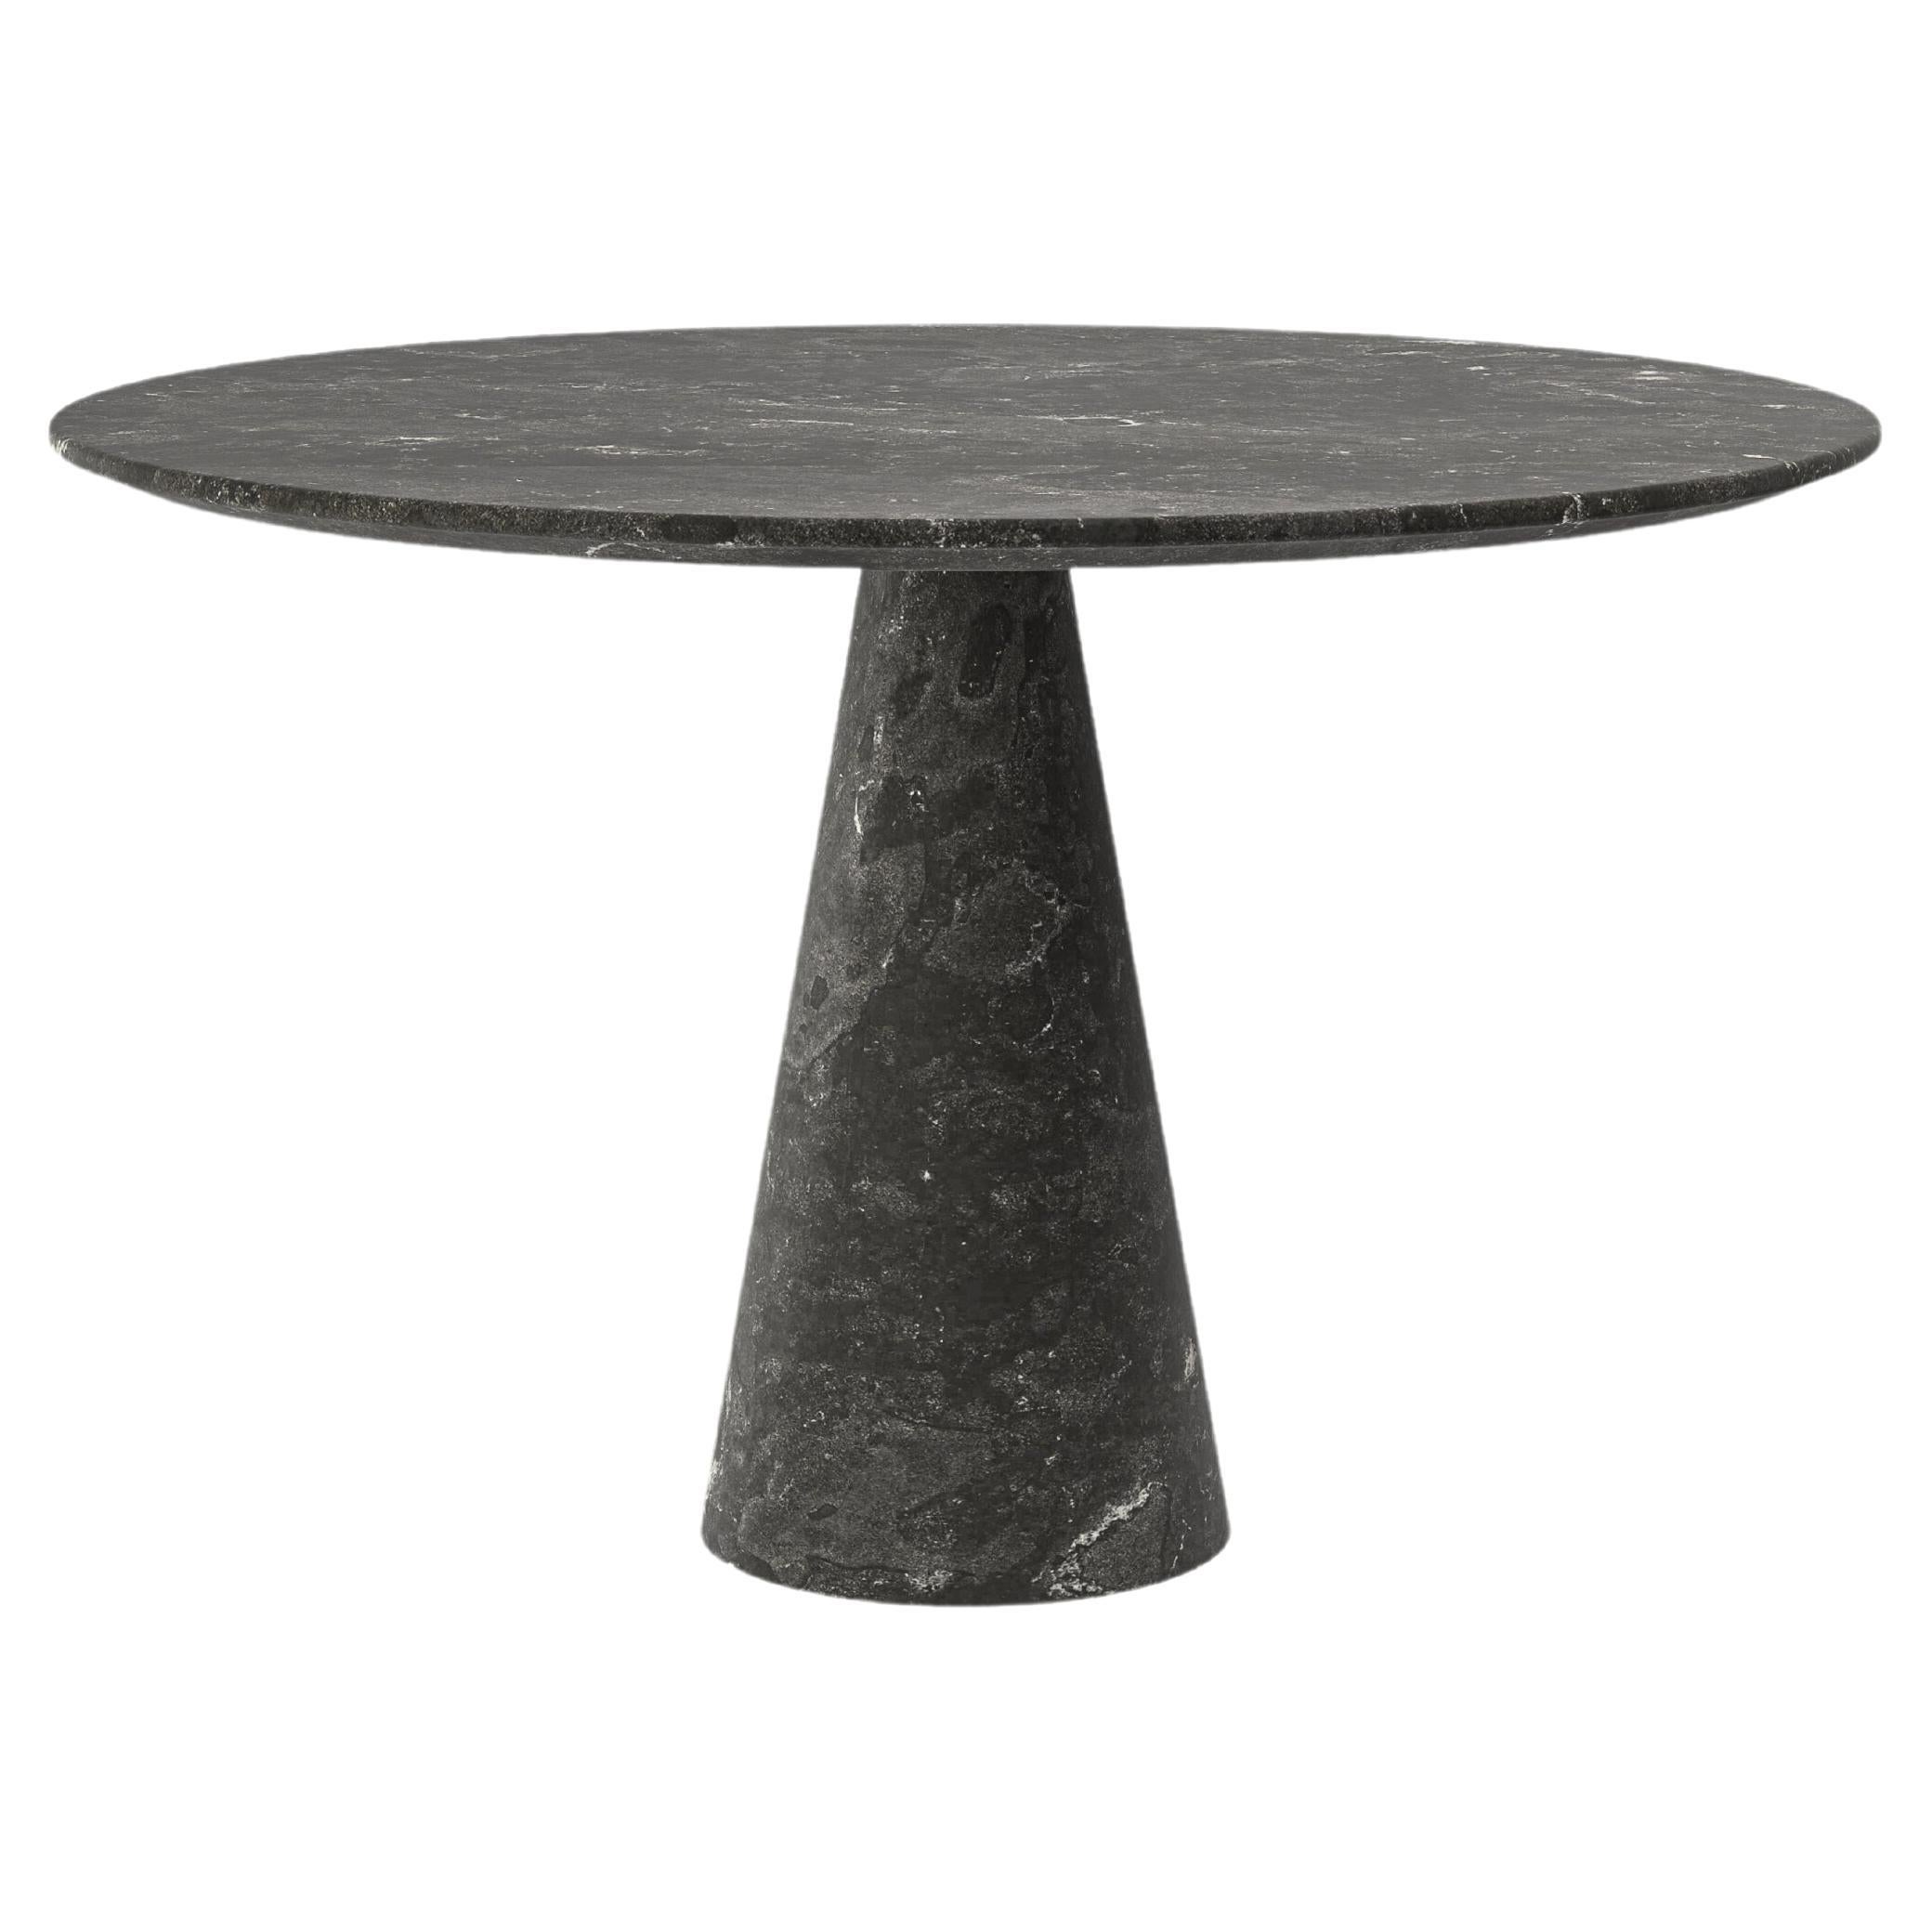 FORM(LA) Cono Round Dining Table 54”L x 54"W x 30”H Nero Petite Granite For Sale